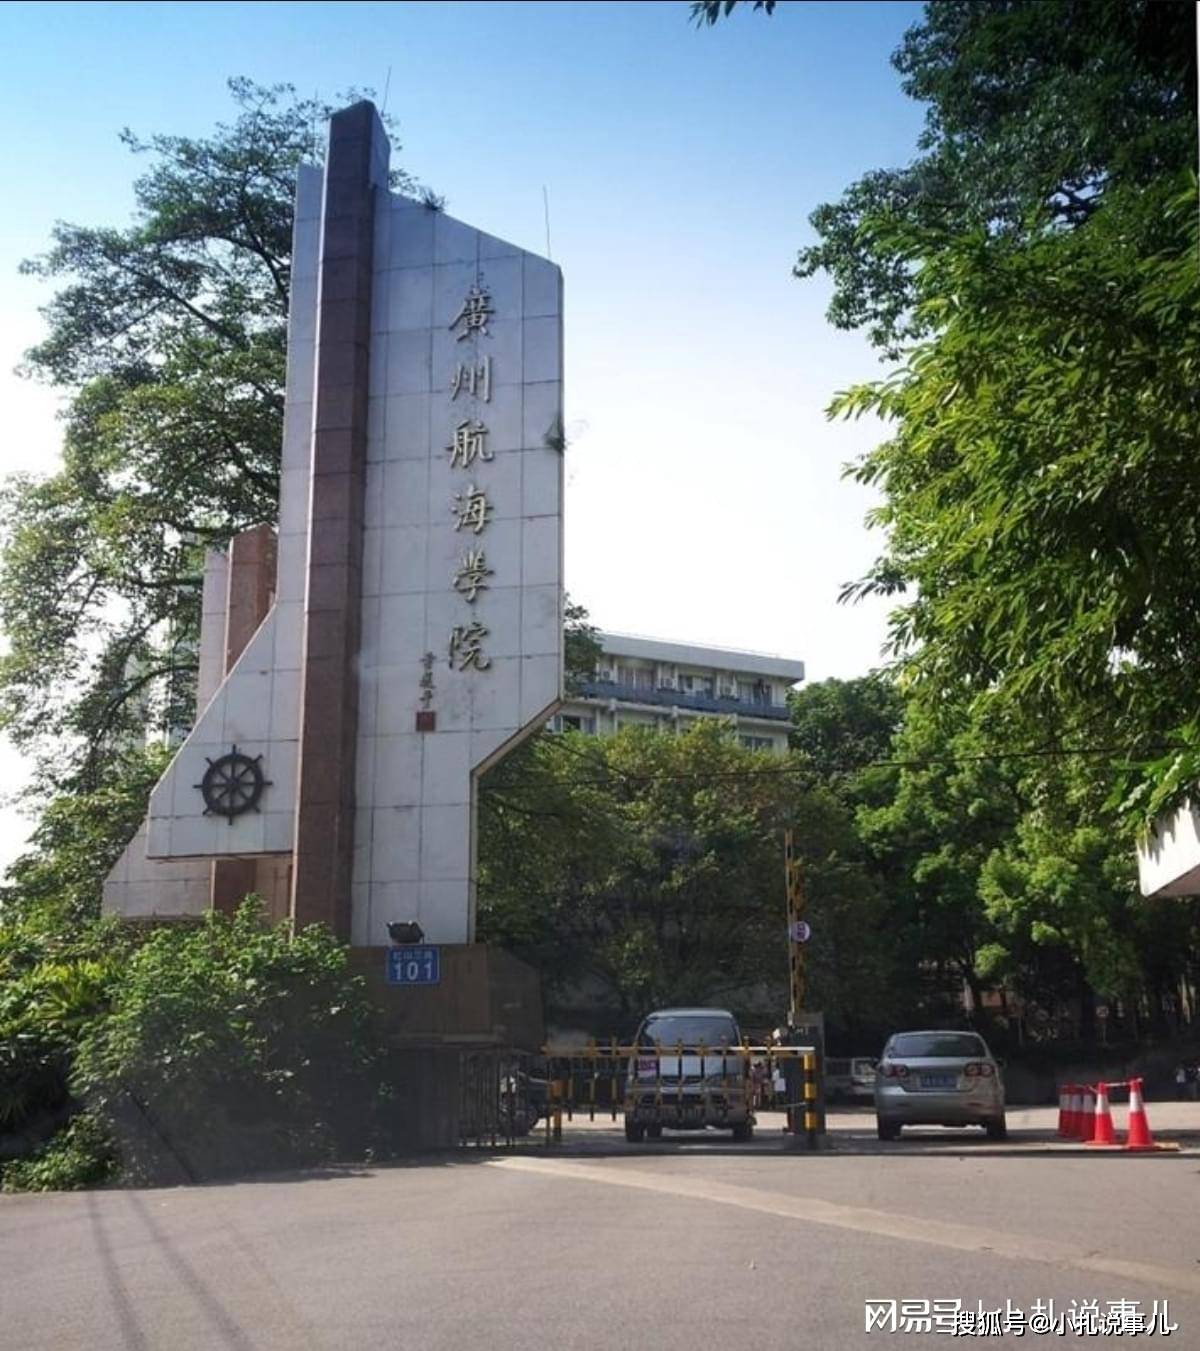 黄埔大学选址确定科教创新区堪比番禺大学城广州知识城未来可期